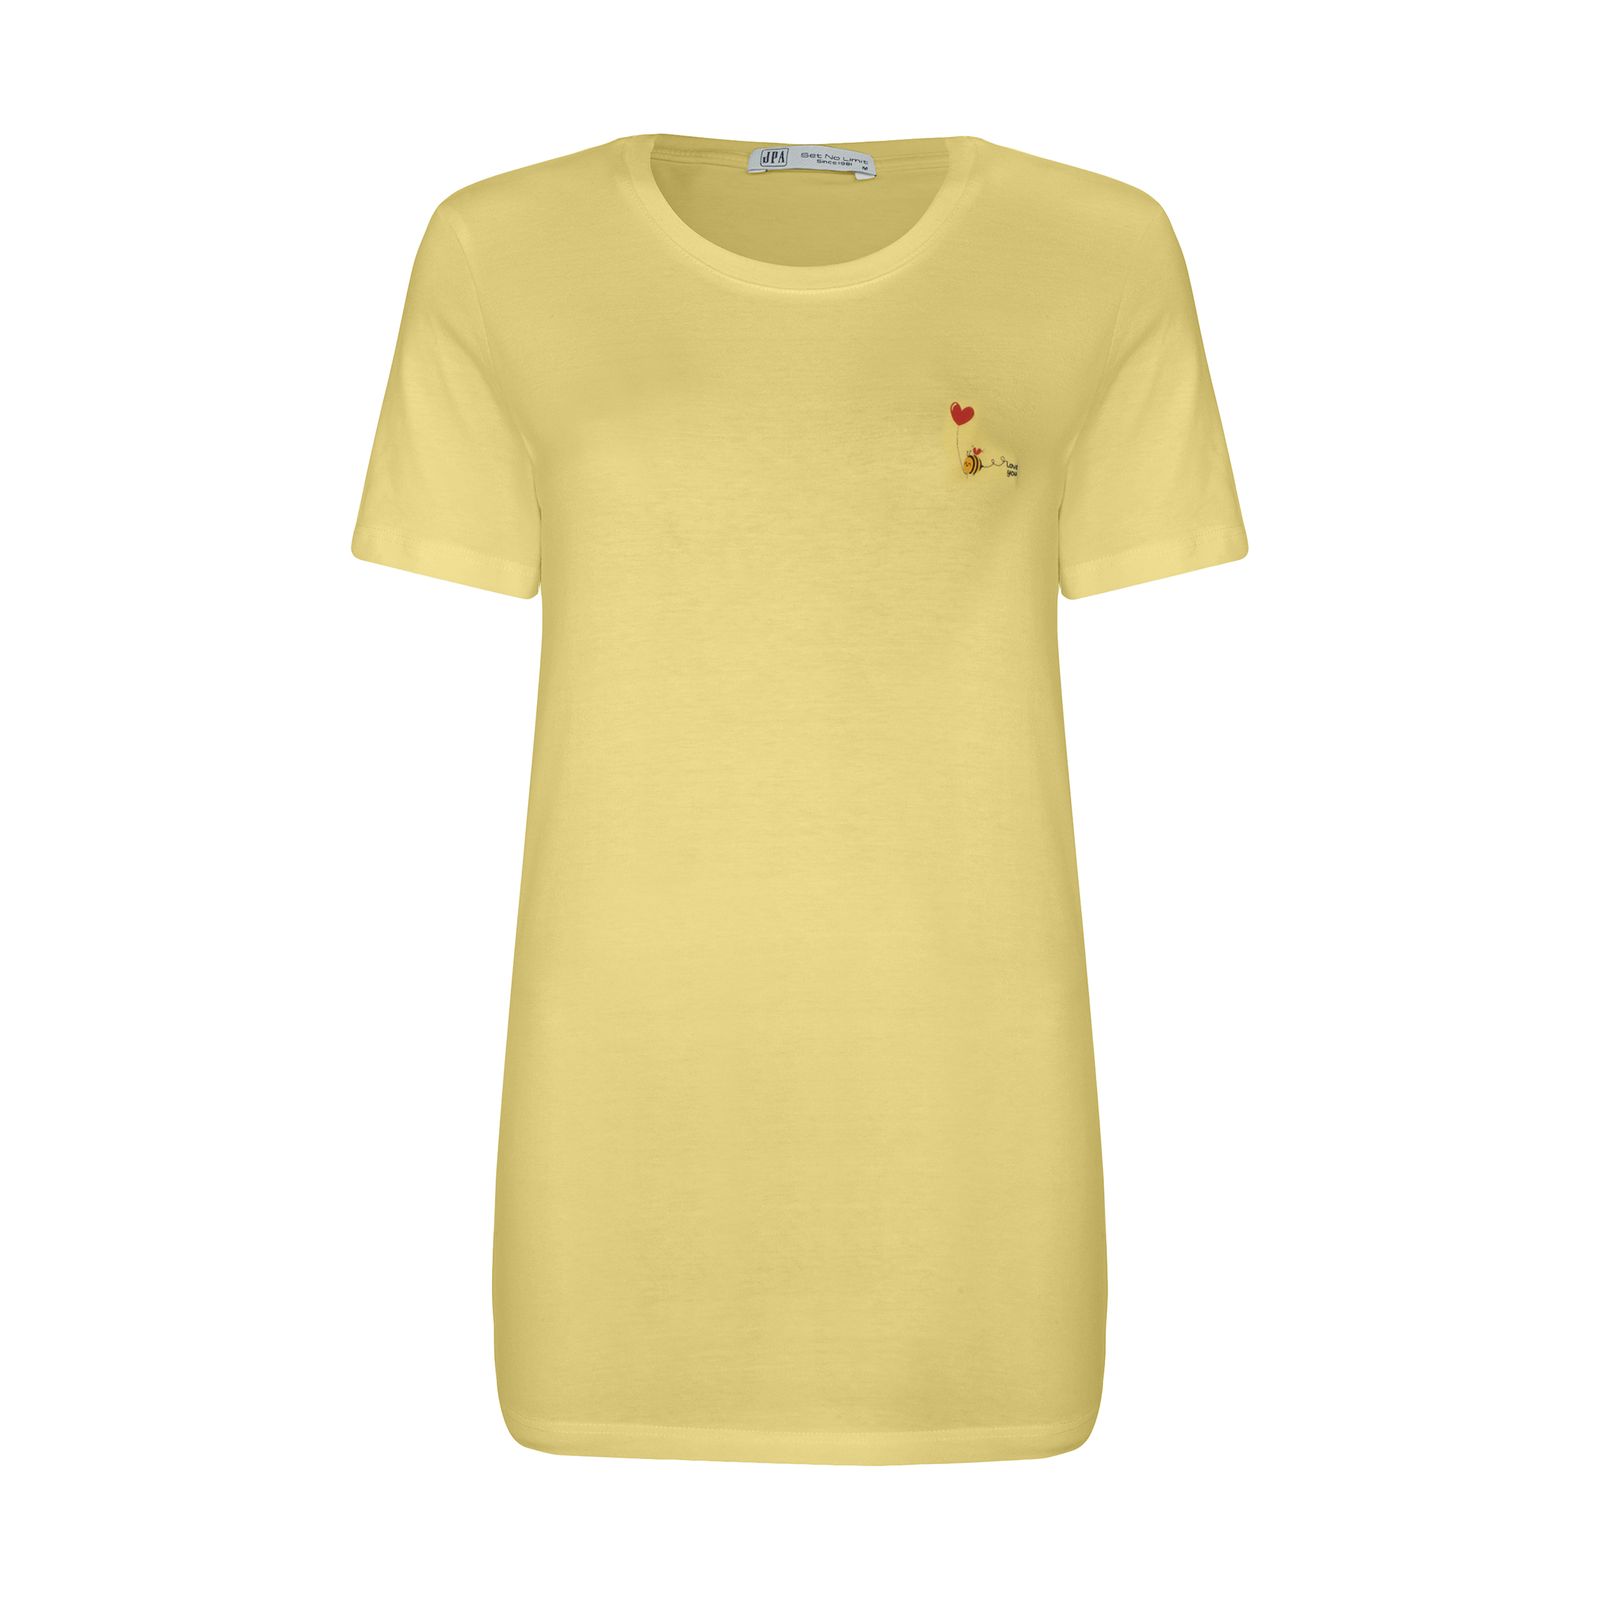 تی شرت زنانه جامه پوش آرا مدل 4012019449-16 -  - 1